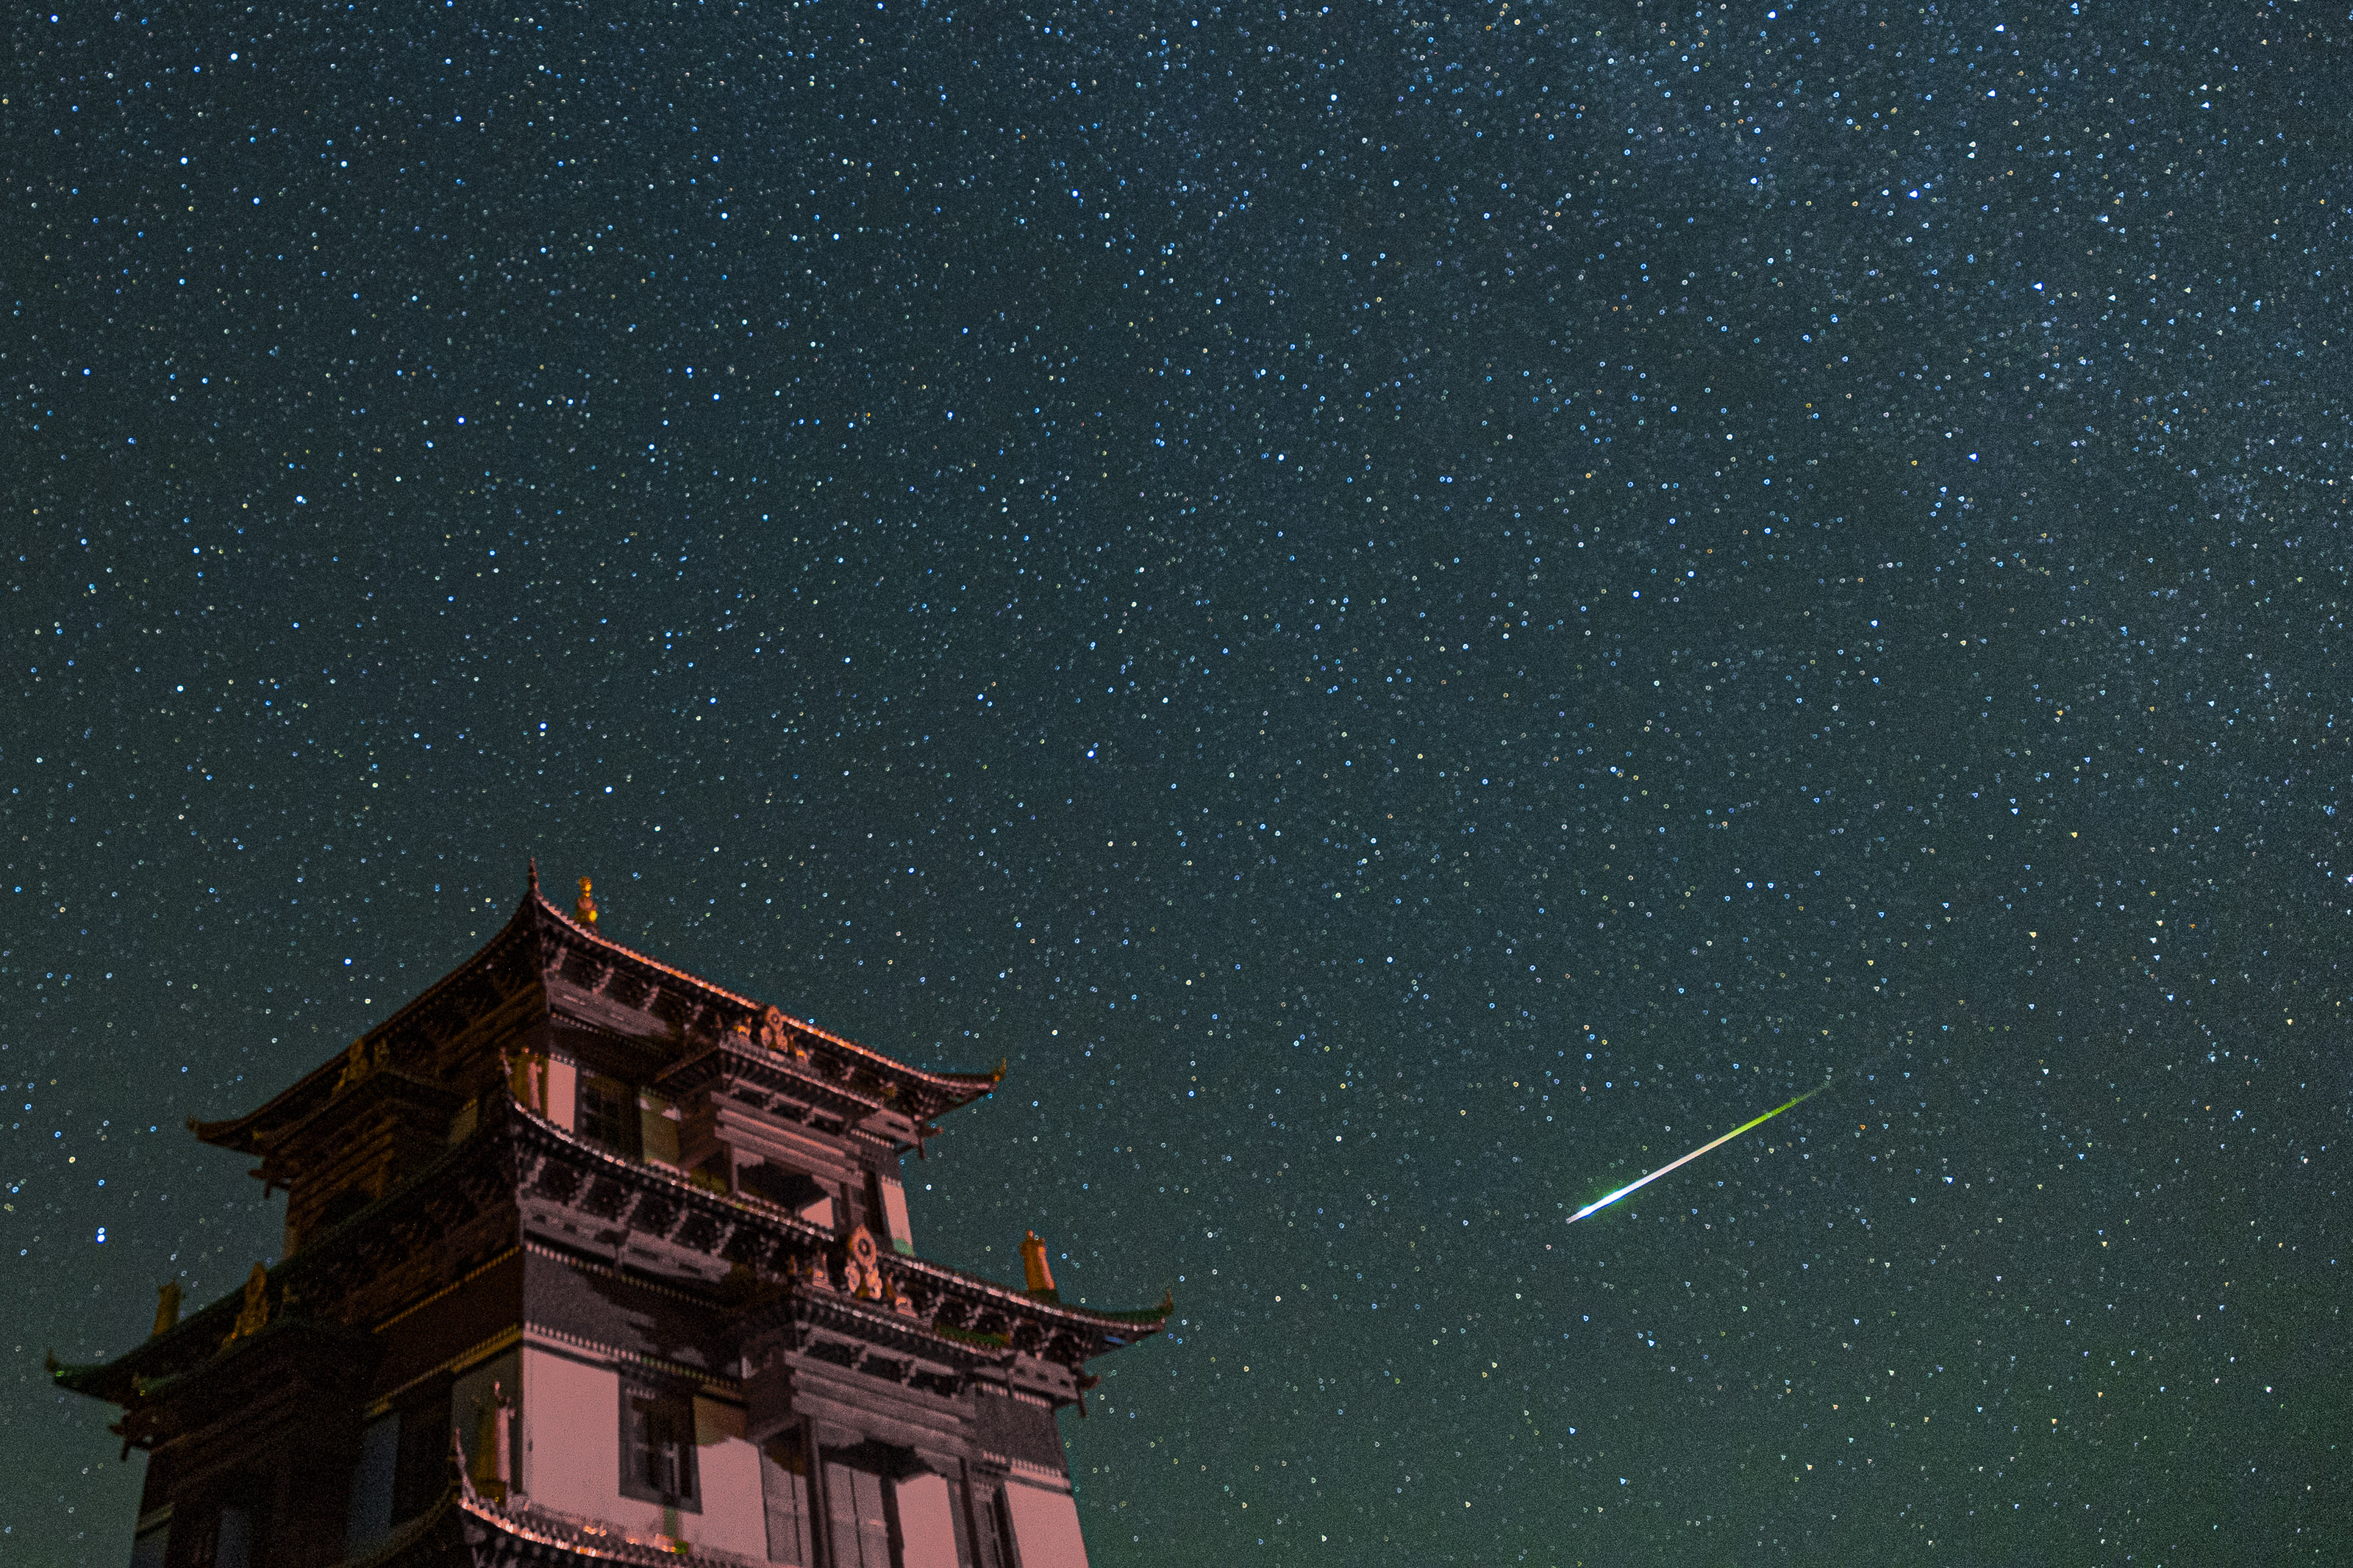 Un gran edificio a la izquierda y un meteoro blanco brillante cruzando el cielo estrellado.